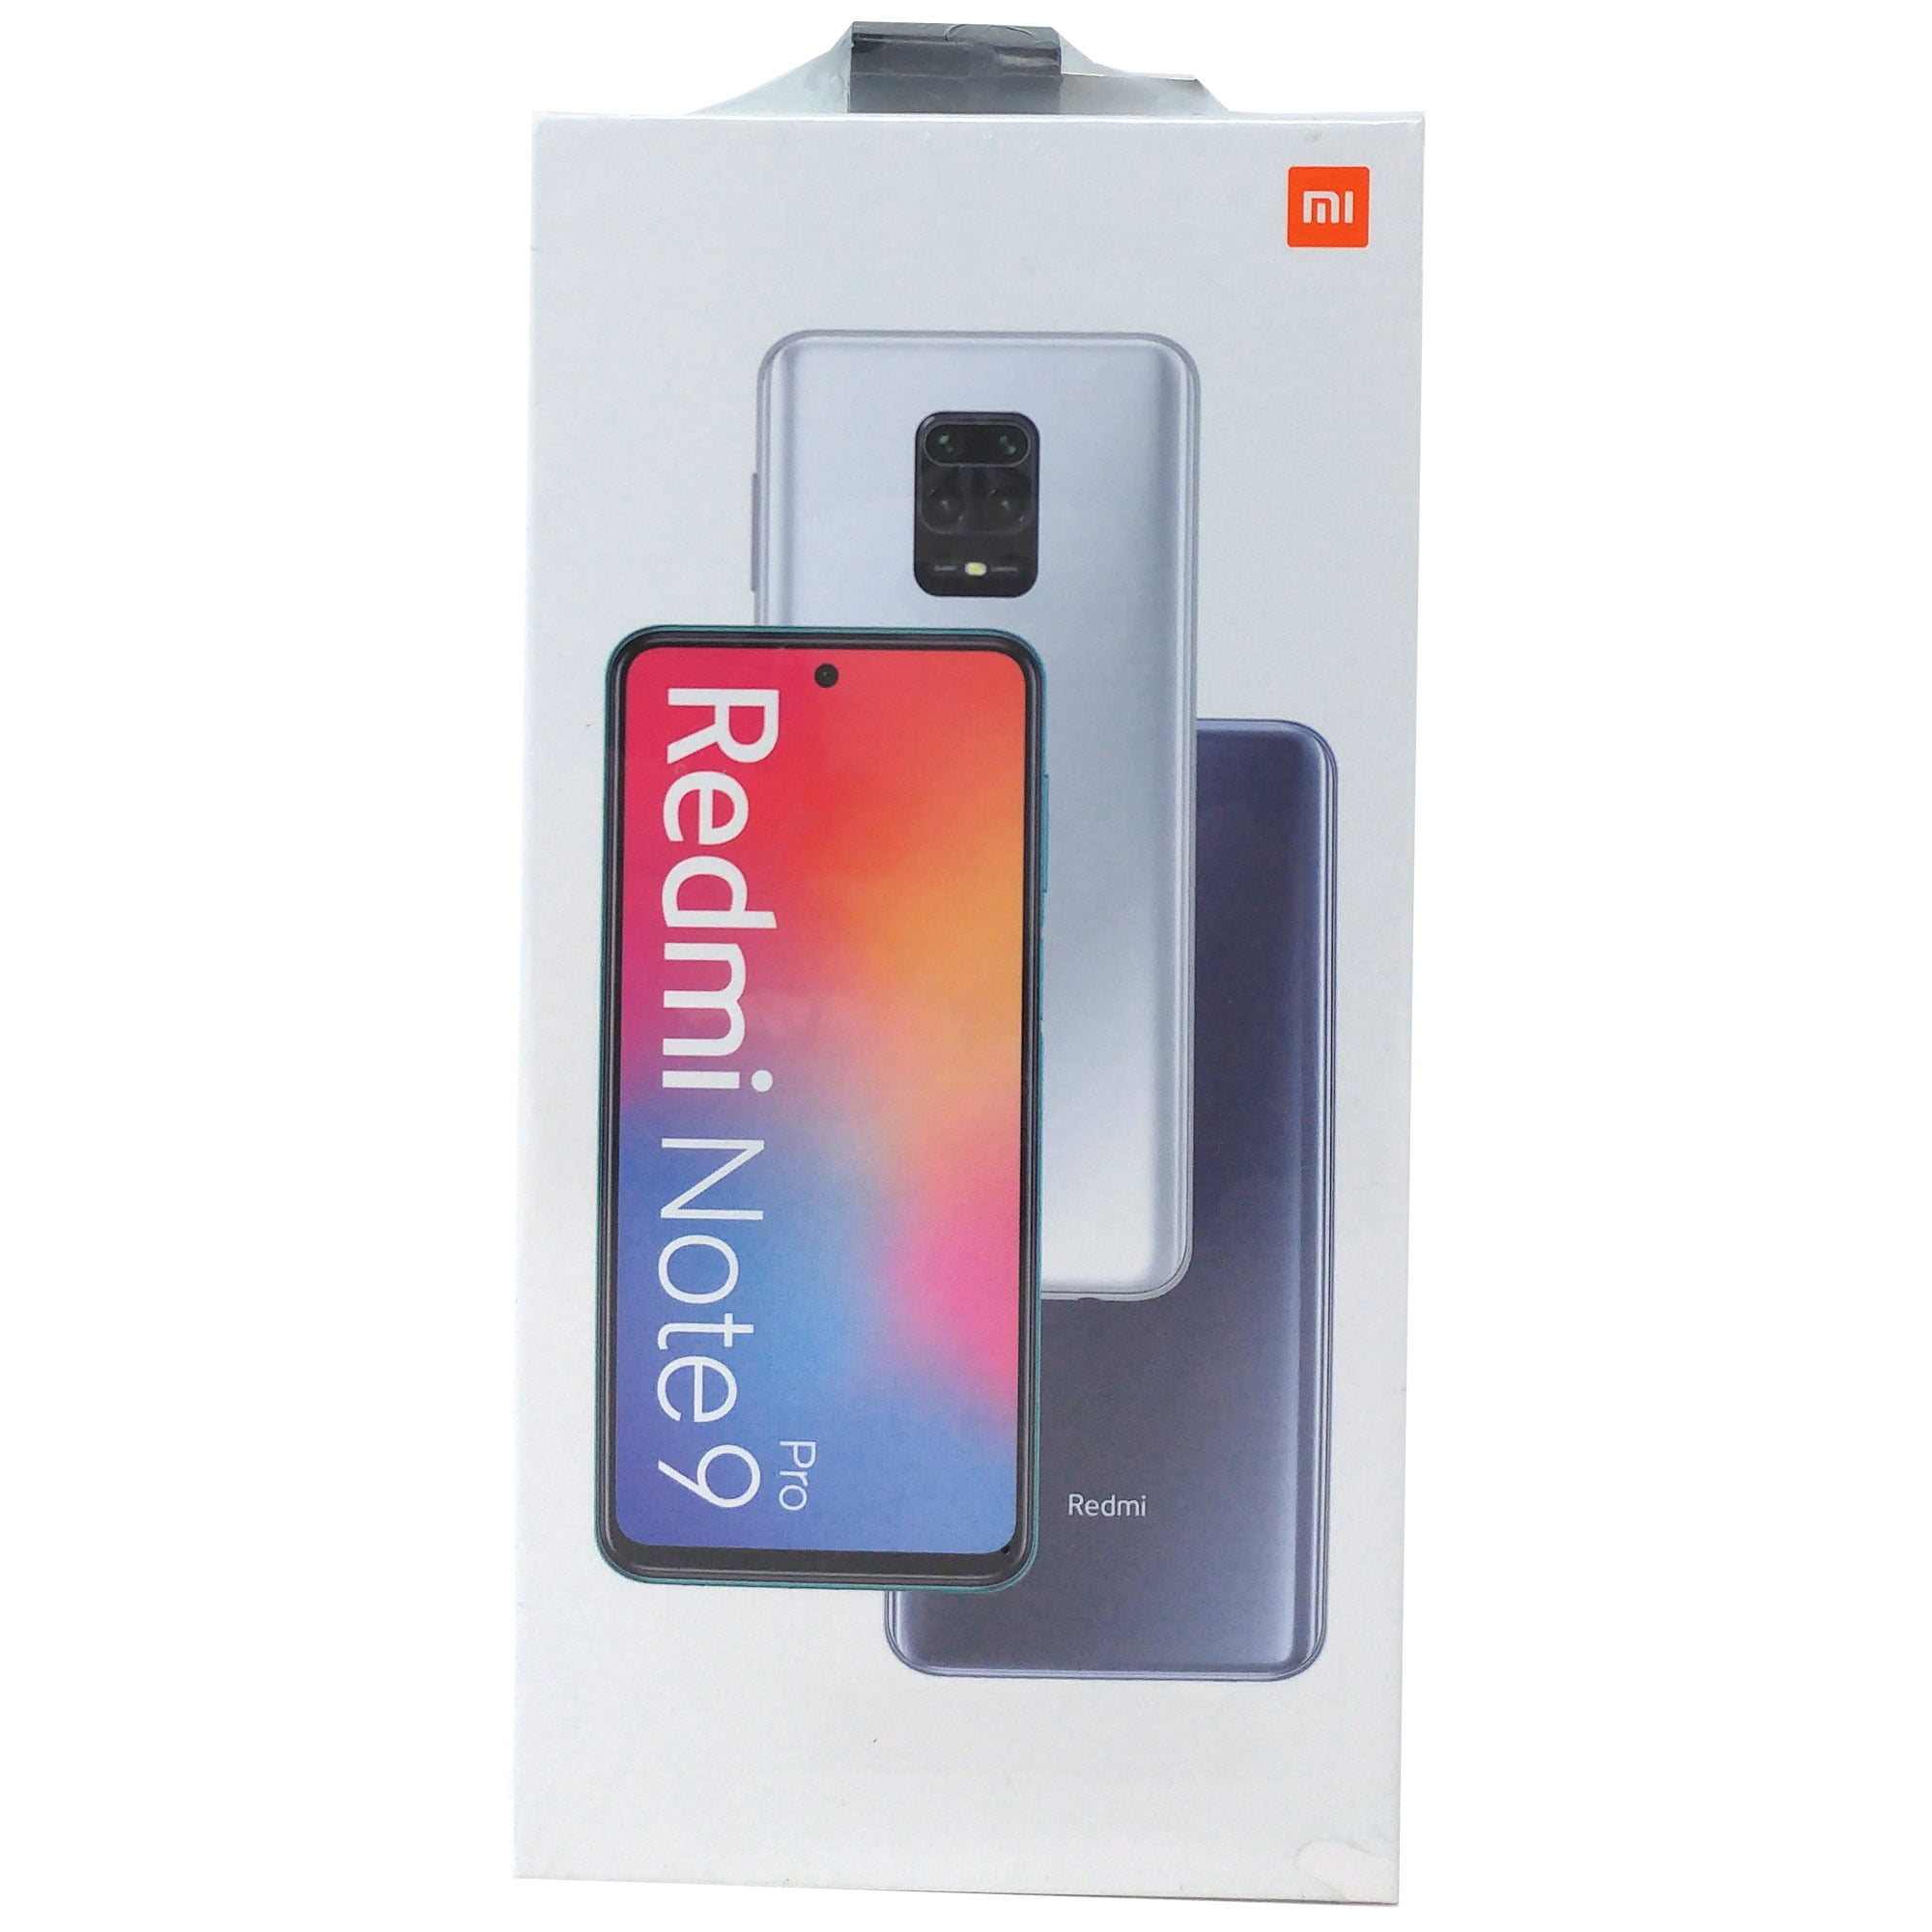 Celular Xiaomi Redmi Note 9 Pro 64 Gb 6 Gb Ram color Gris Dual Sim Global  Reacondicionado